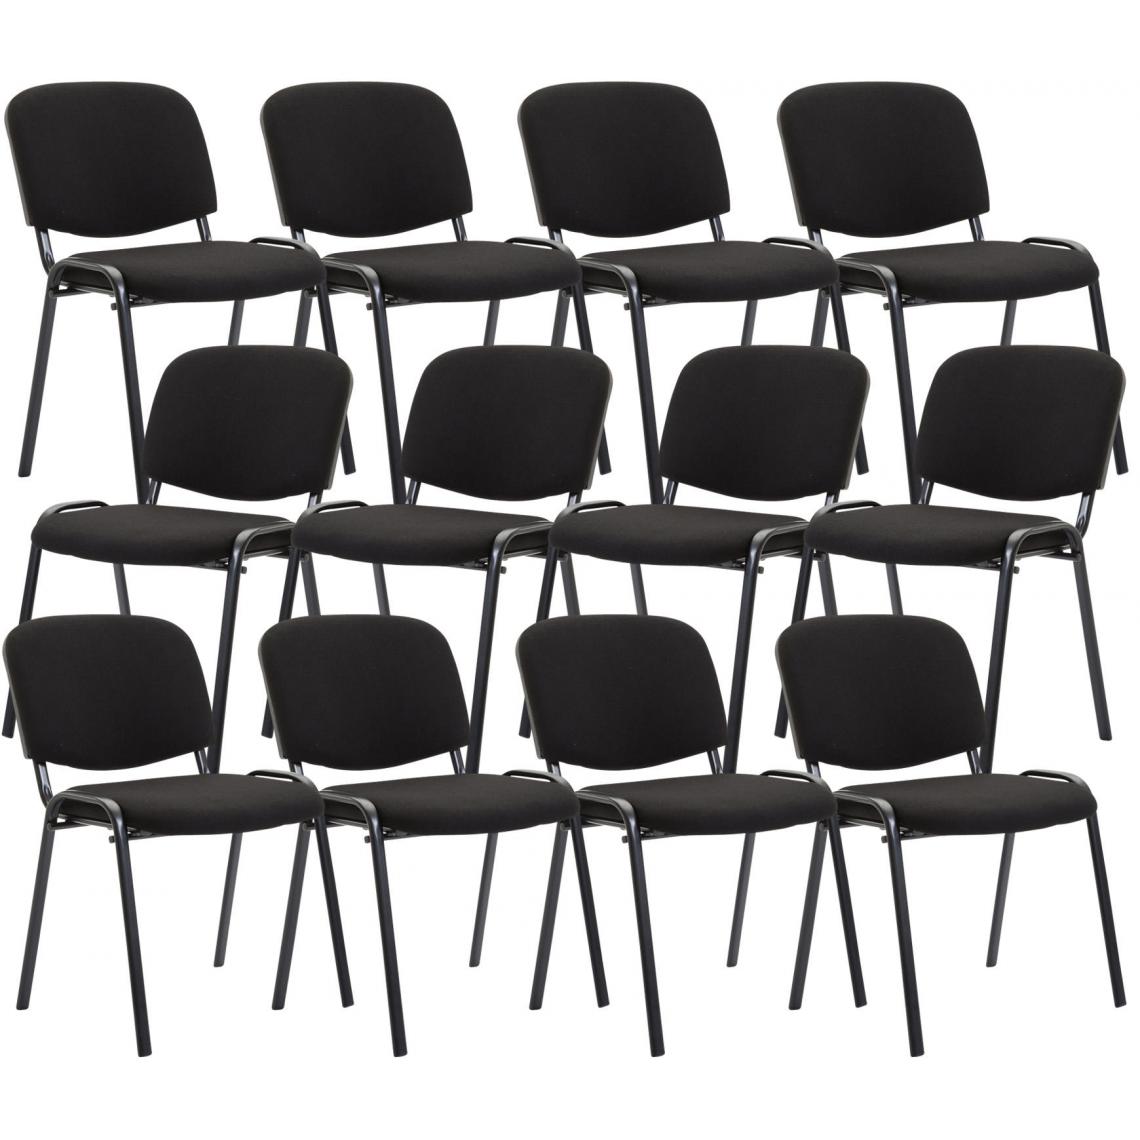 Icaverne - Magnifique Ensemble de 12 chaises visiteurs en tissu serie Bamako couleur noir - Chaises